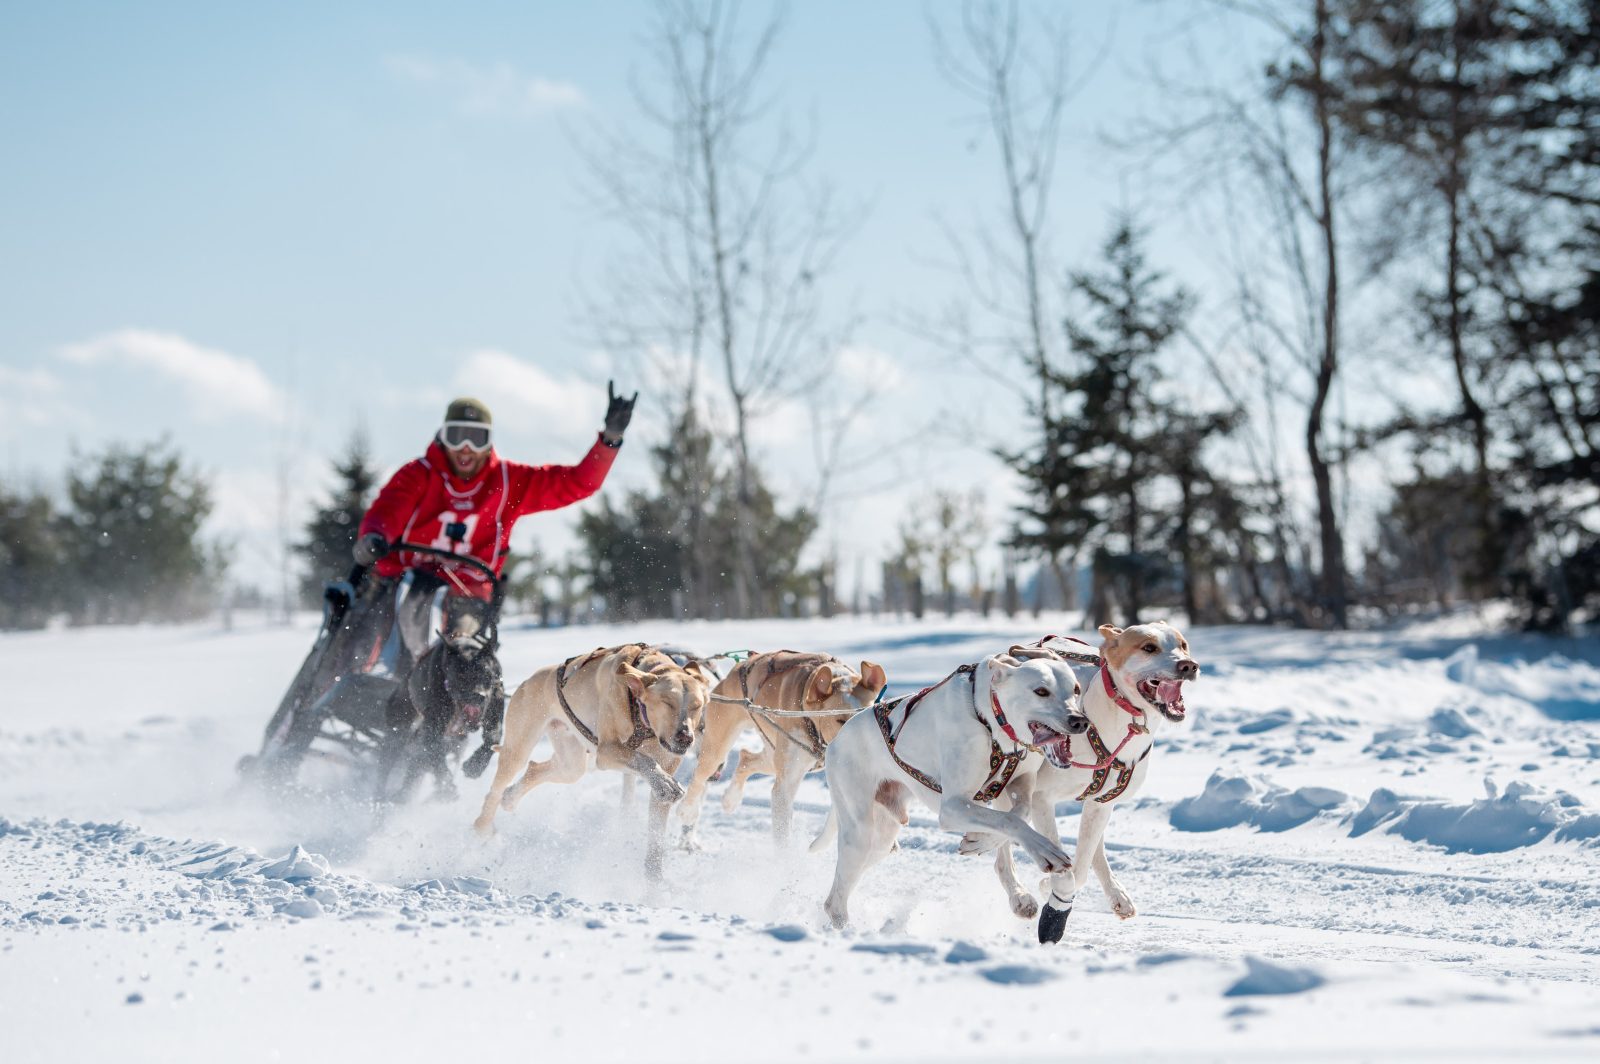 Le Défi hivernal Dion Sports – Ski Doo revient à Pont-Rouge